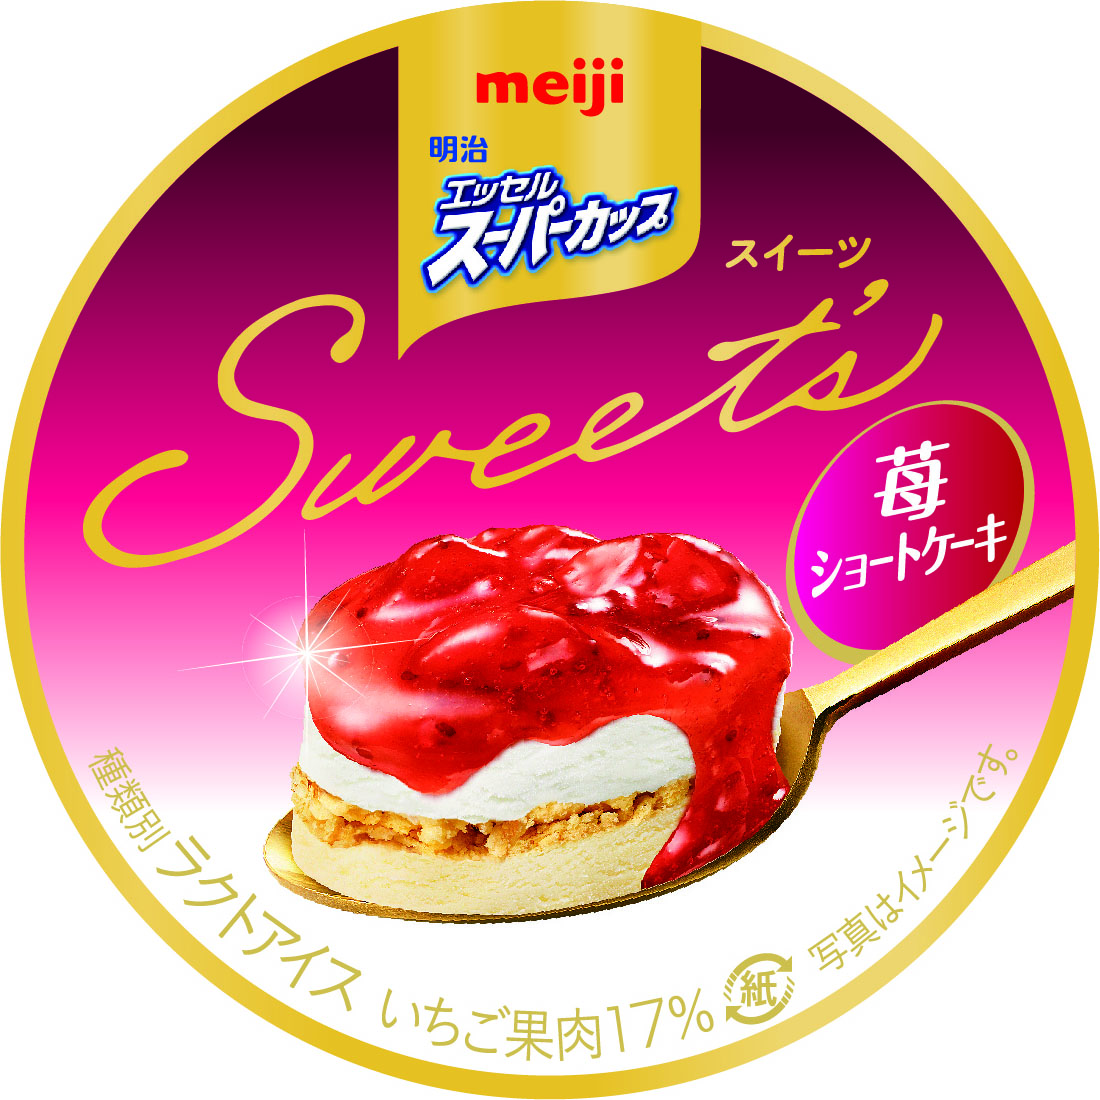 シリーズを代表する「明治 エッセル スーパーカップSweet‘s 苺ショートケーキ」も一新！